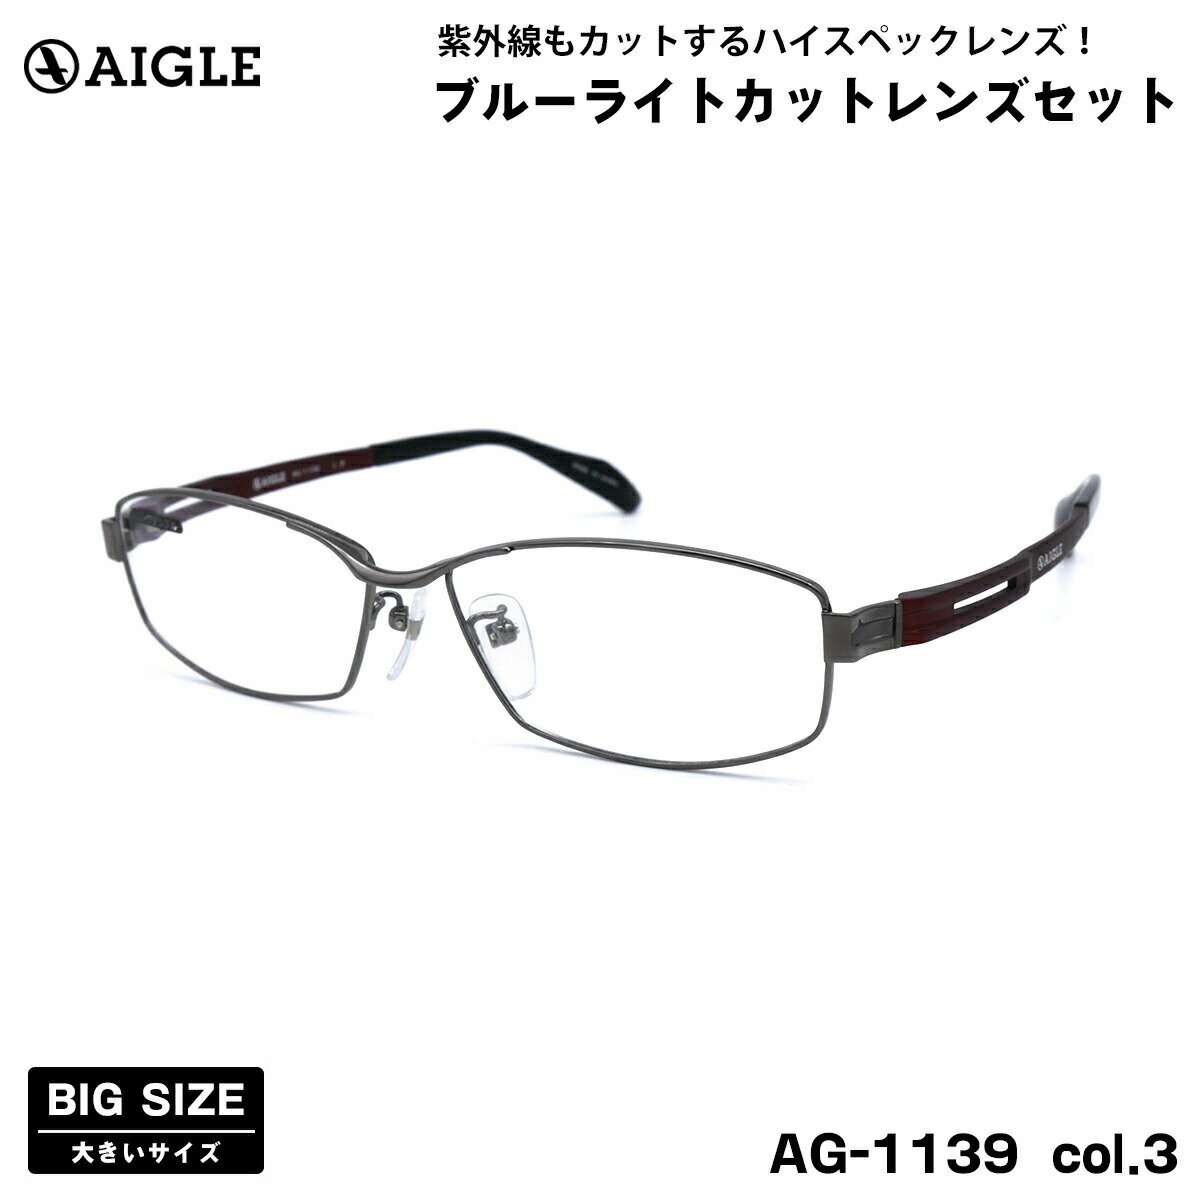 傫TCY ɒB _eKl AG-1139 col.3 60mm G[O AIGLE UVJbg u[CgJbg BIG Ch 傫